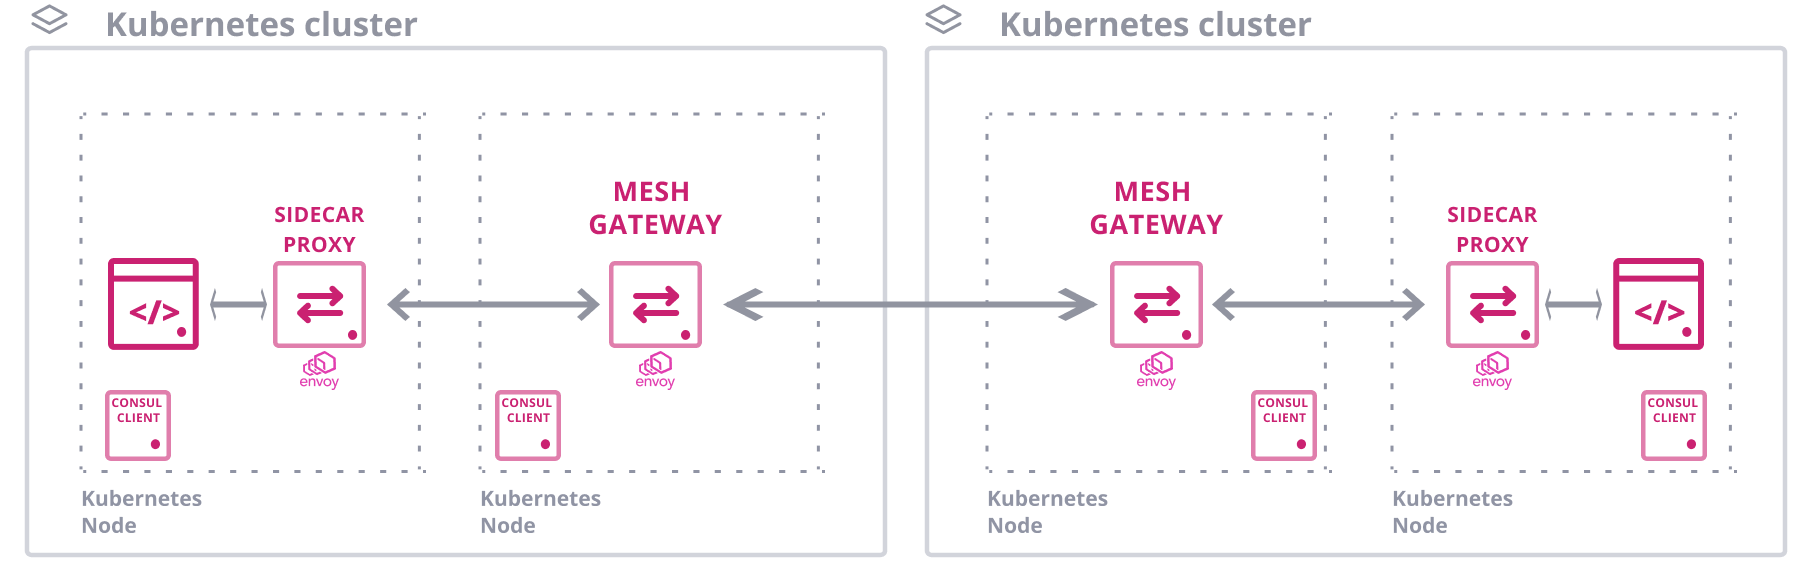 Kubernetes Mesh Gateway Diagram